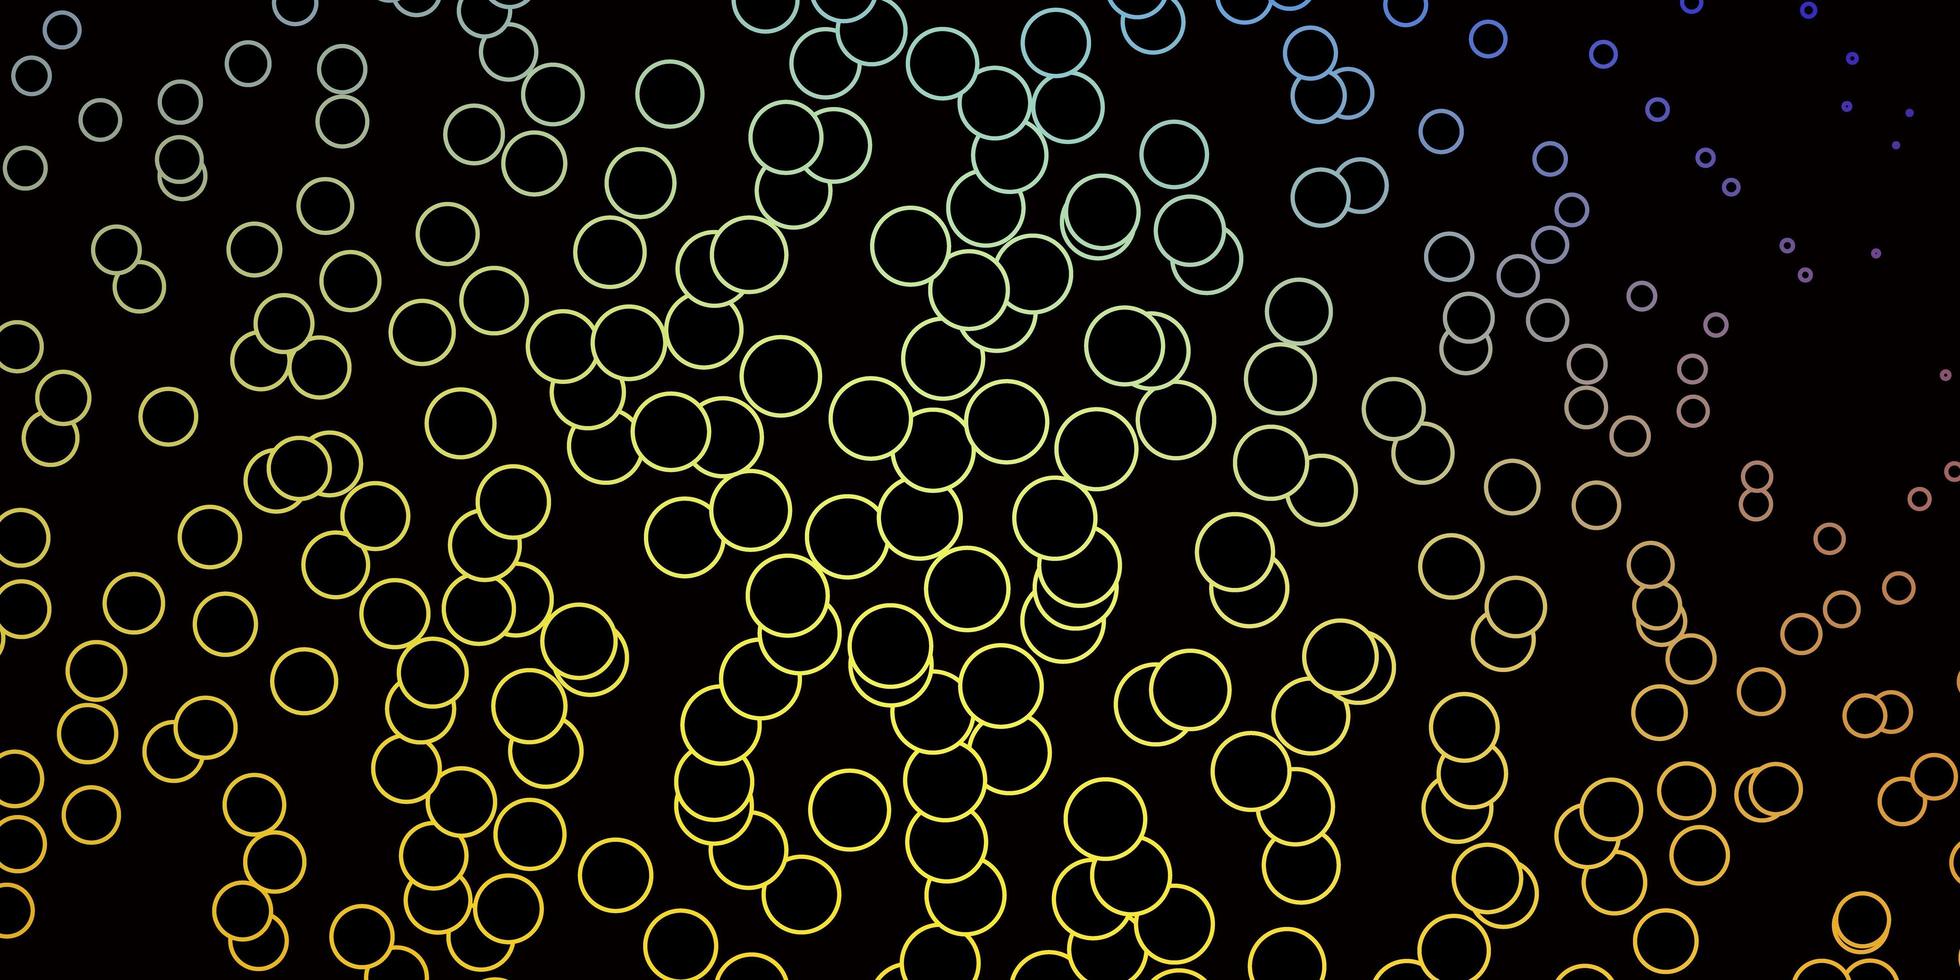 sfondo vettoriale giallo blu scuro con cerchi illustrazione astratta moderna con forme circolari colorate design per i tuoi annunci pubblicitari